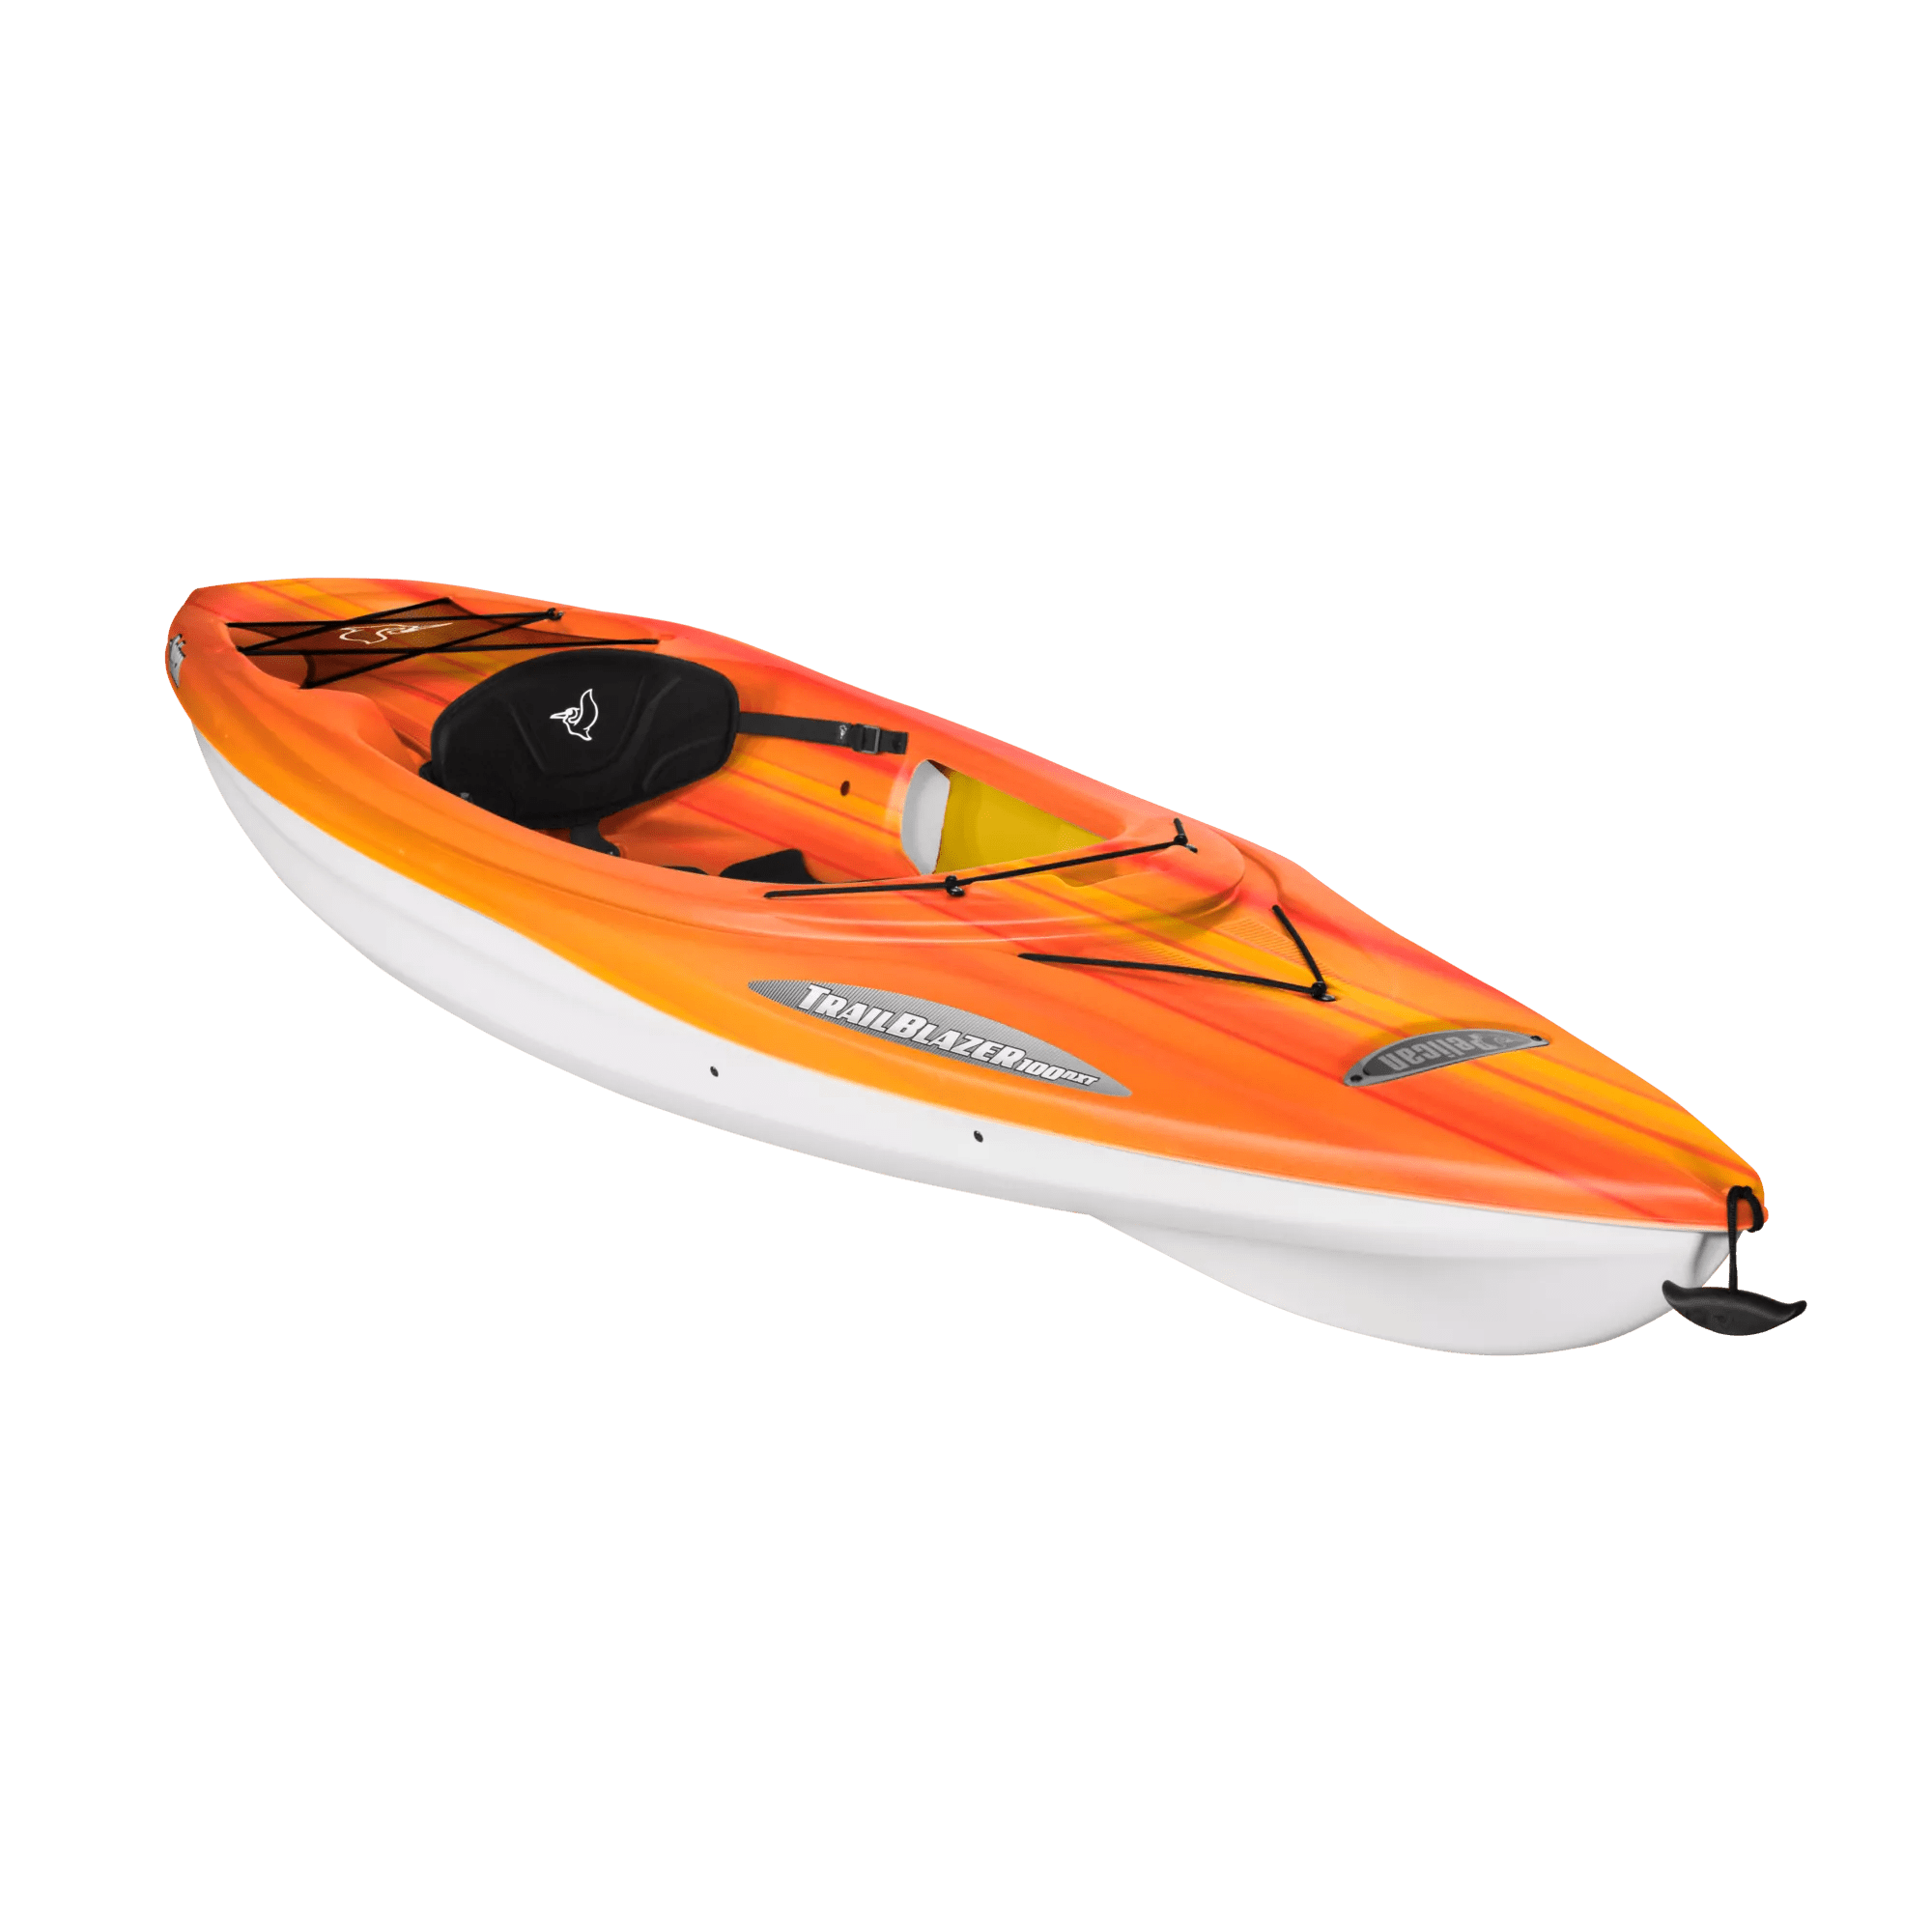 PELICAN - Trailblazer 100 NXT Recreational Kayak - Red - KSF10P100 - ISO